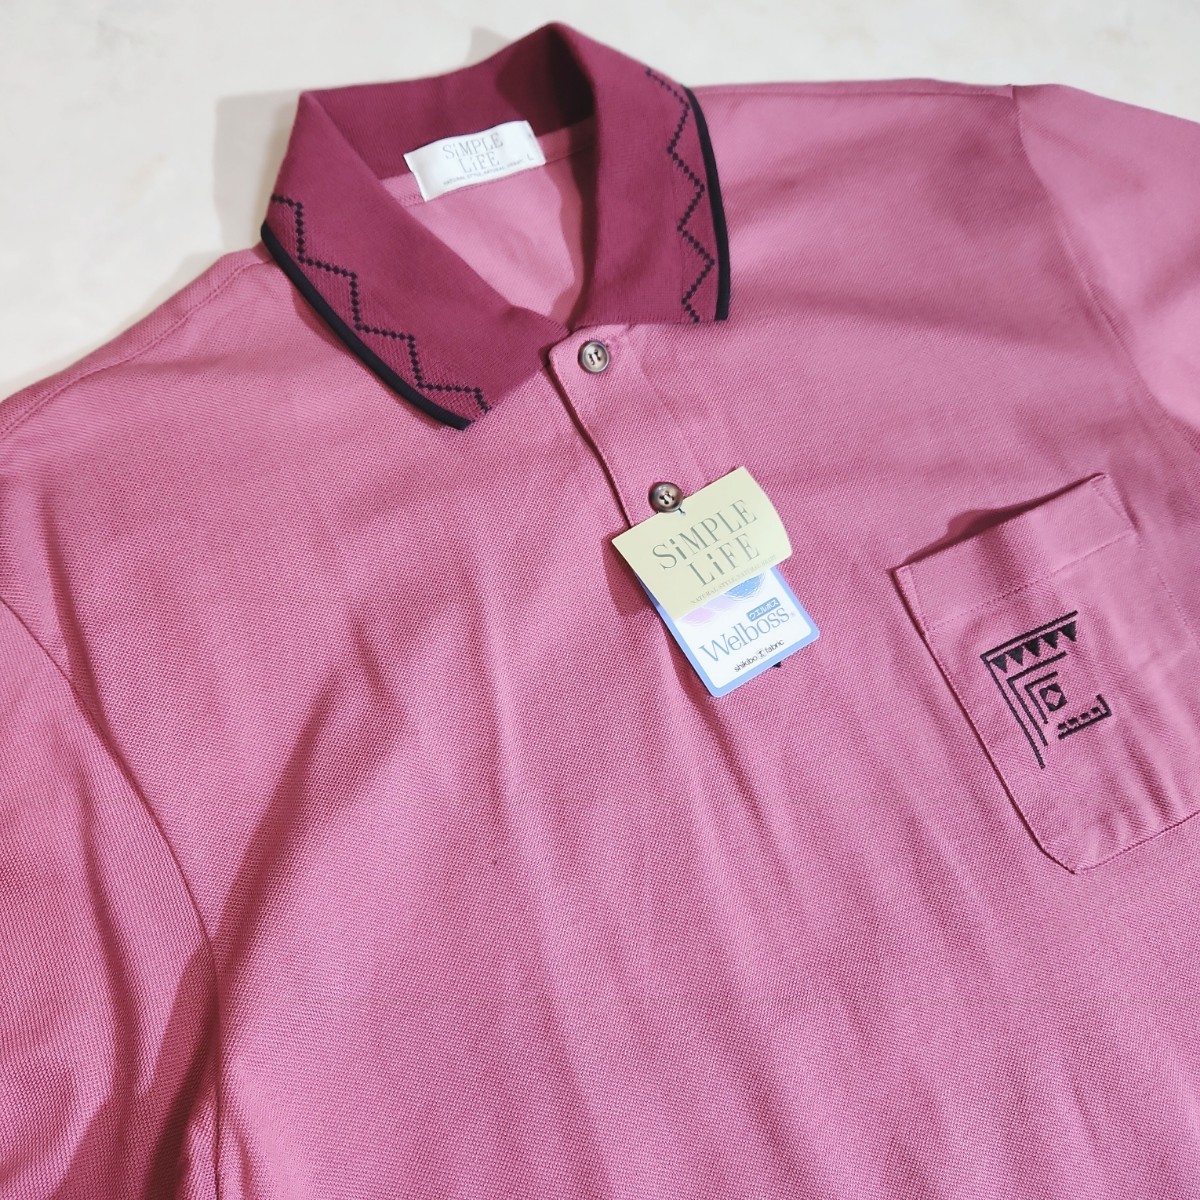 未使用品 レナウン SIMPLE LIFE 半袖ポロシャツ 赤紫っぽいピンク Lサイズ 胸ポケット 刺繍 82917_画像2